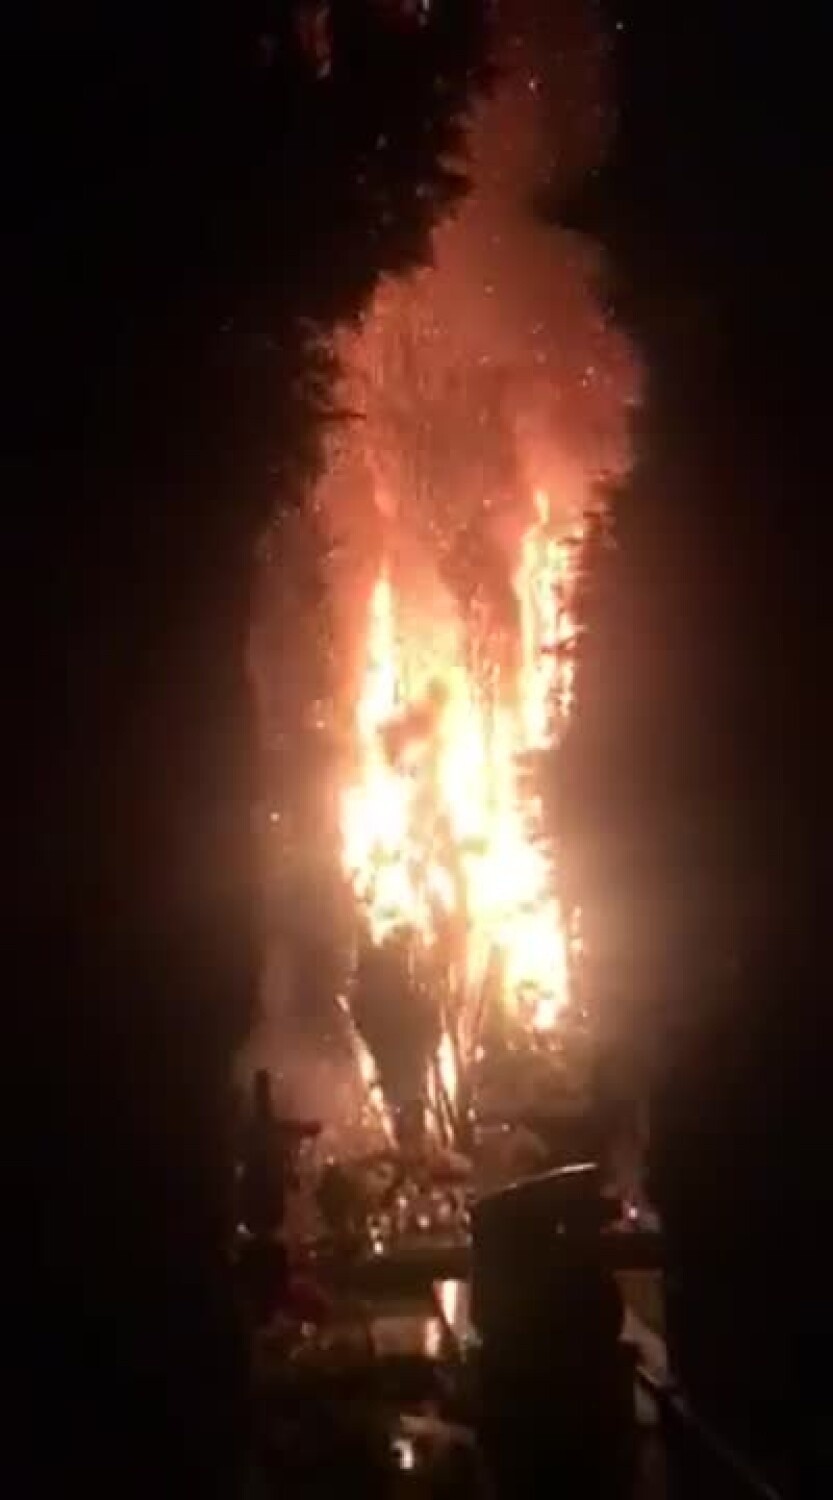 Dolny Śląsk: Pożar na cmentarzu. Zaczęło się od znicza, płomienie sięgały 30 metrów! [ZDJĘCIA]